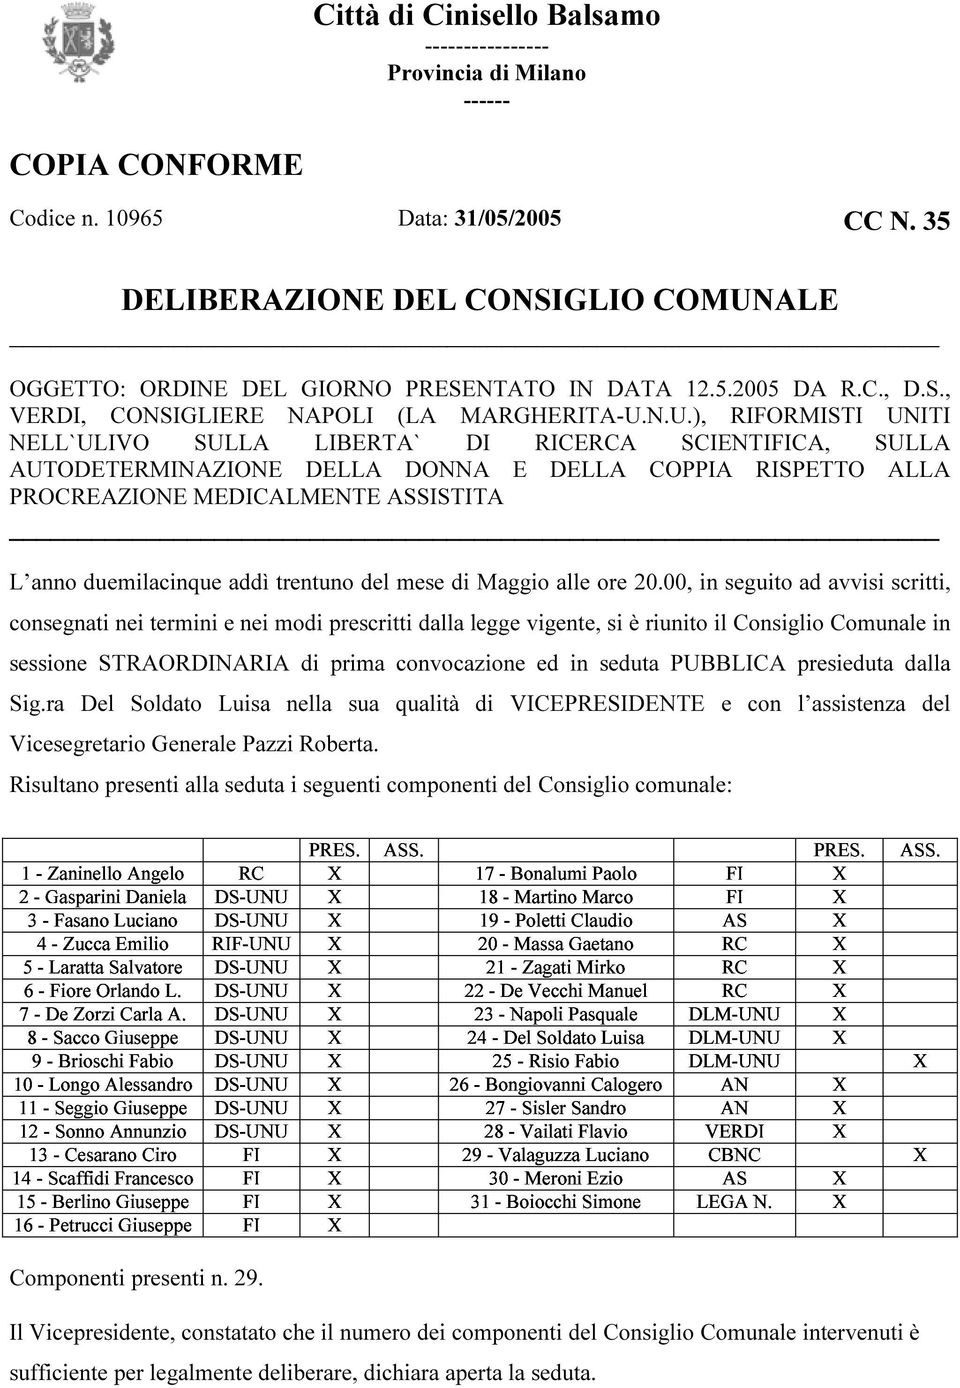 ALE OGGETTO: ORDINE DEL GIORNO PRESENTATO IN DATA 12.5.2005 DA R.C., D.S., VERDI, CONSIGLIERE NAPOLI (LA MARGHERITA-U.